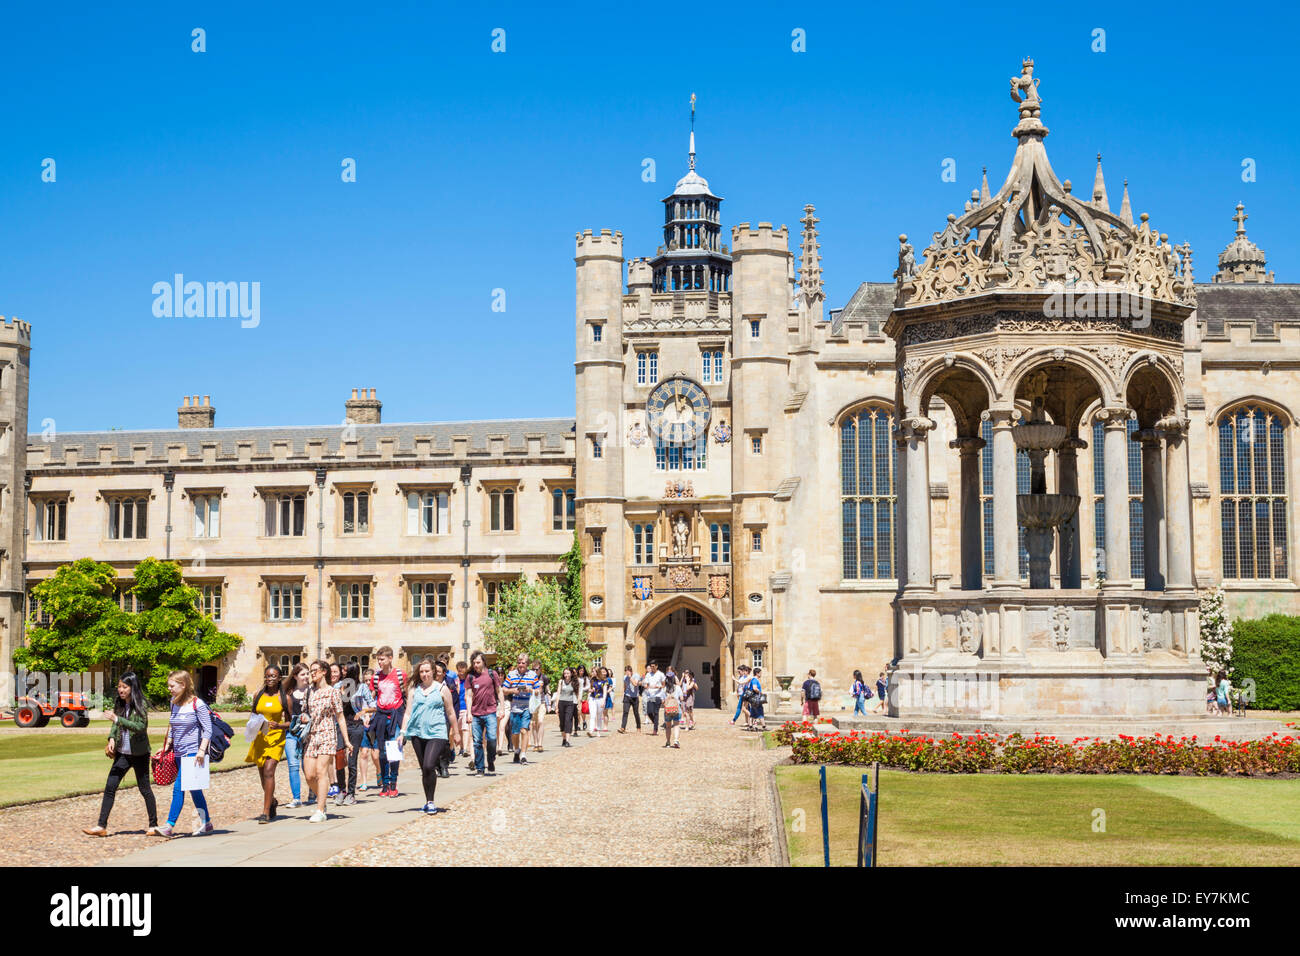 Les étudiants de l'université dans la grande cour du Trinity College de l'Université de Cambridge Cambridge Cambridgeshire England UK GB EU Europe Banque D'Images